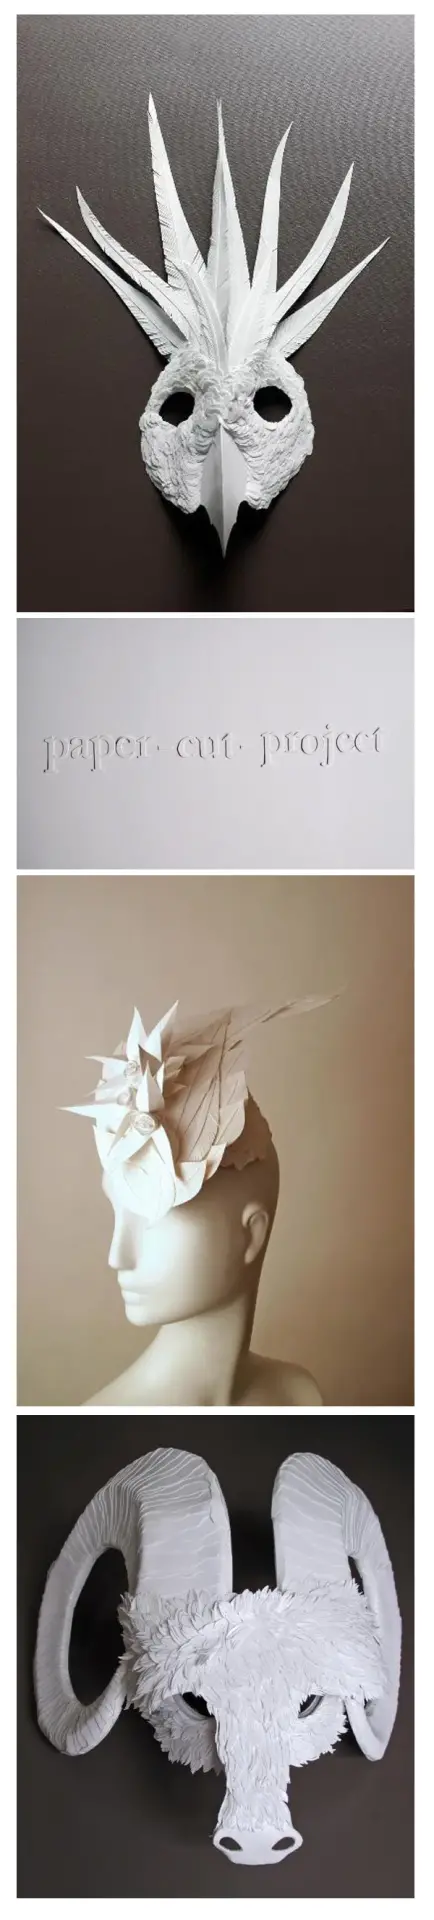 Paper cut project